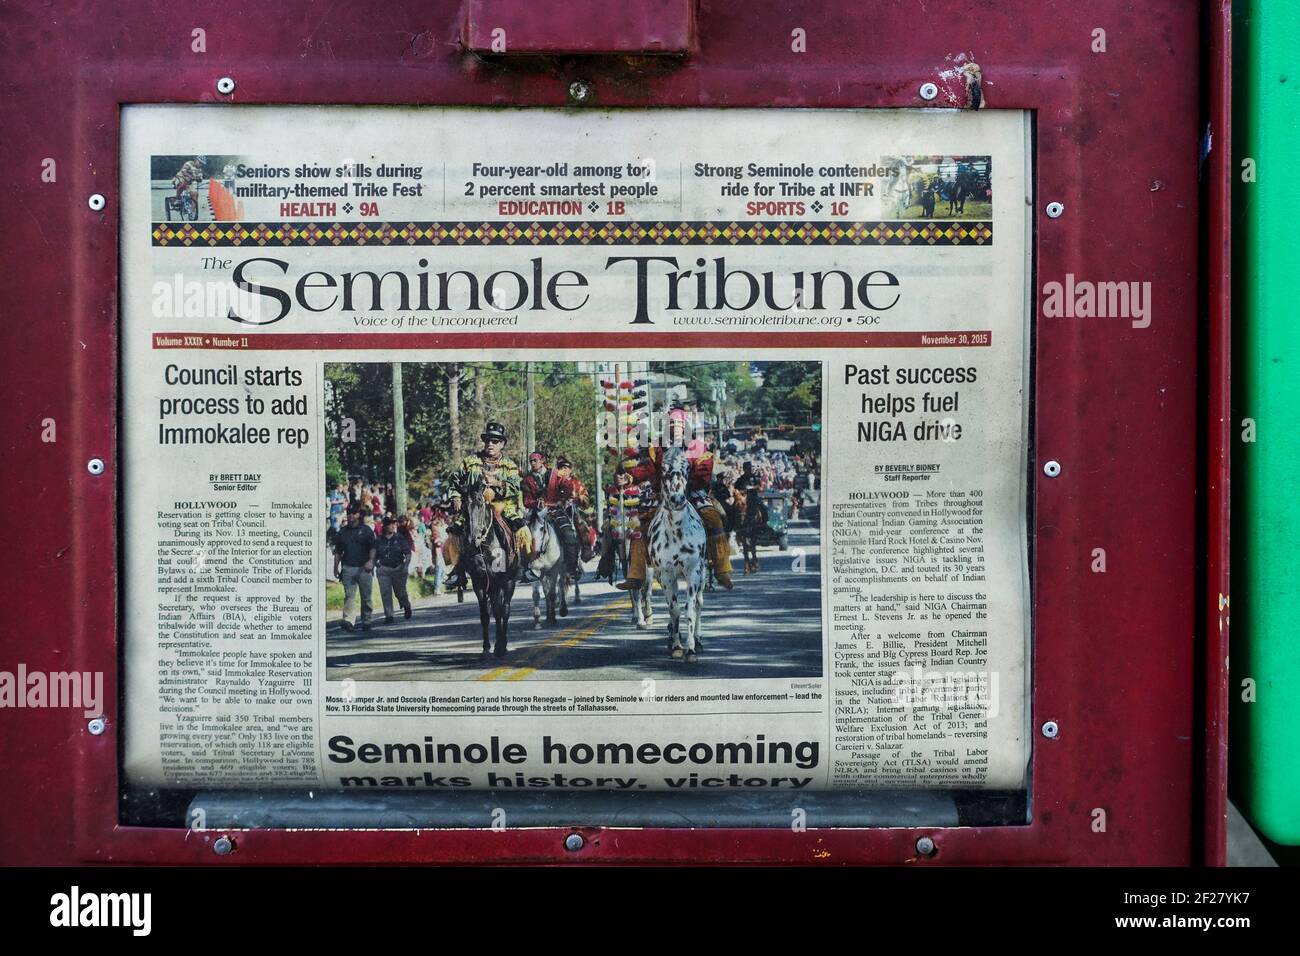 The Seminole Tribune, a native American newspaper, on sale at the Alligator Alley Seminole Service Plaza in Florida. Stock Photo